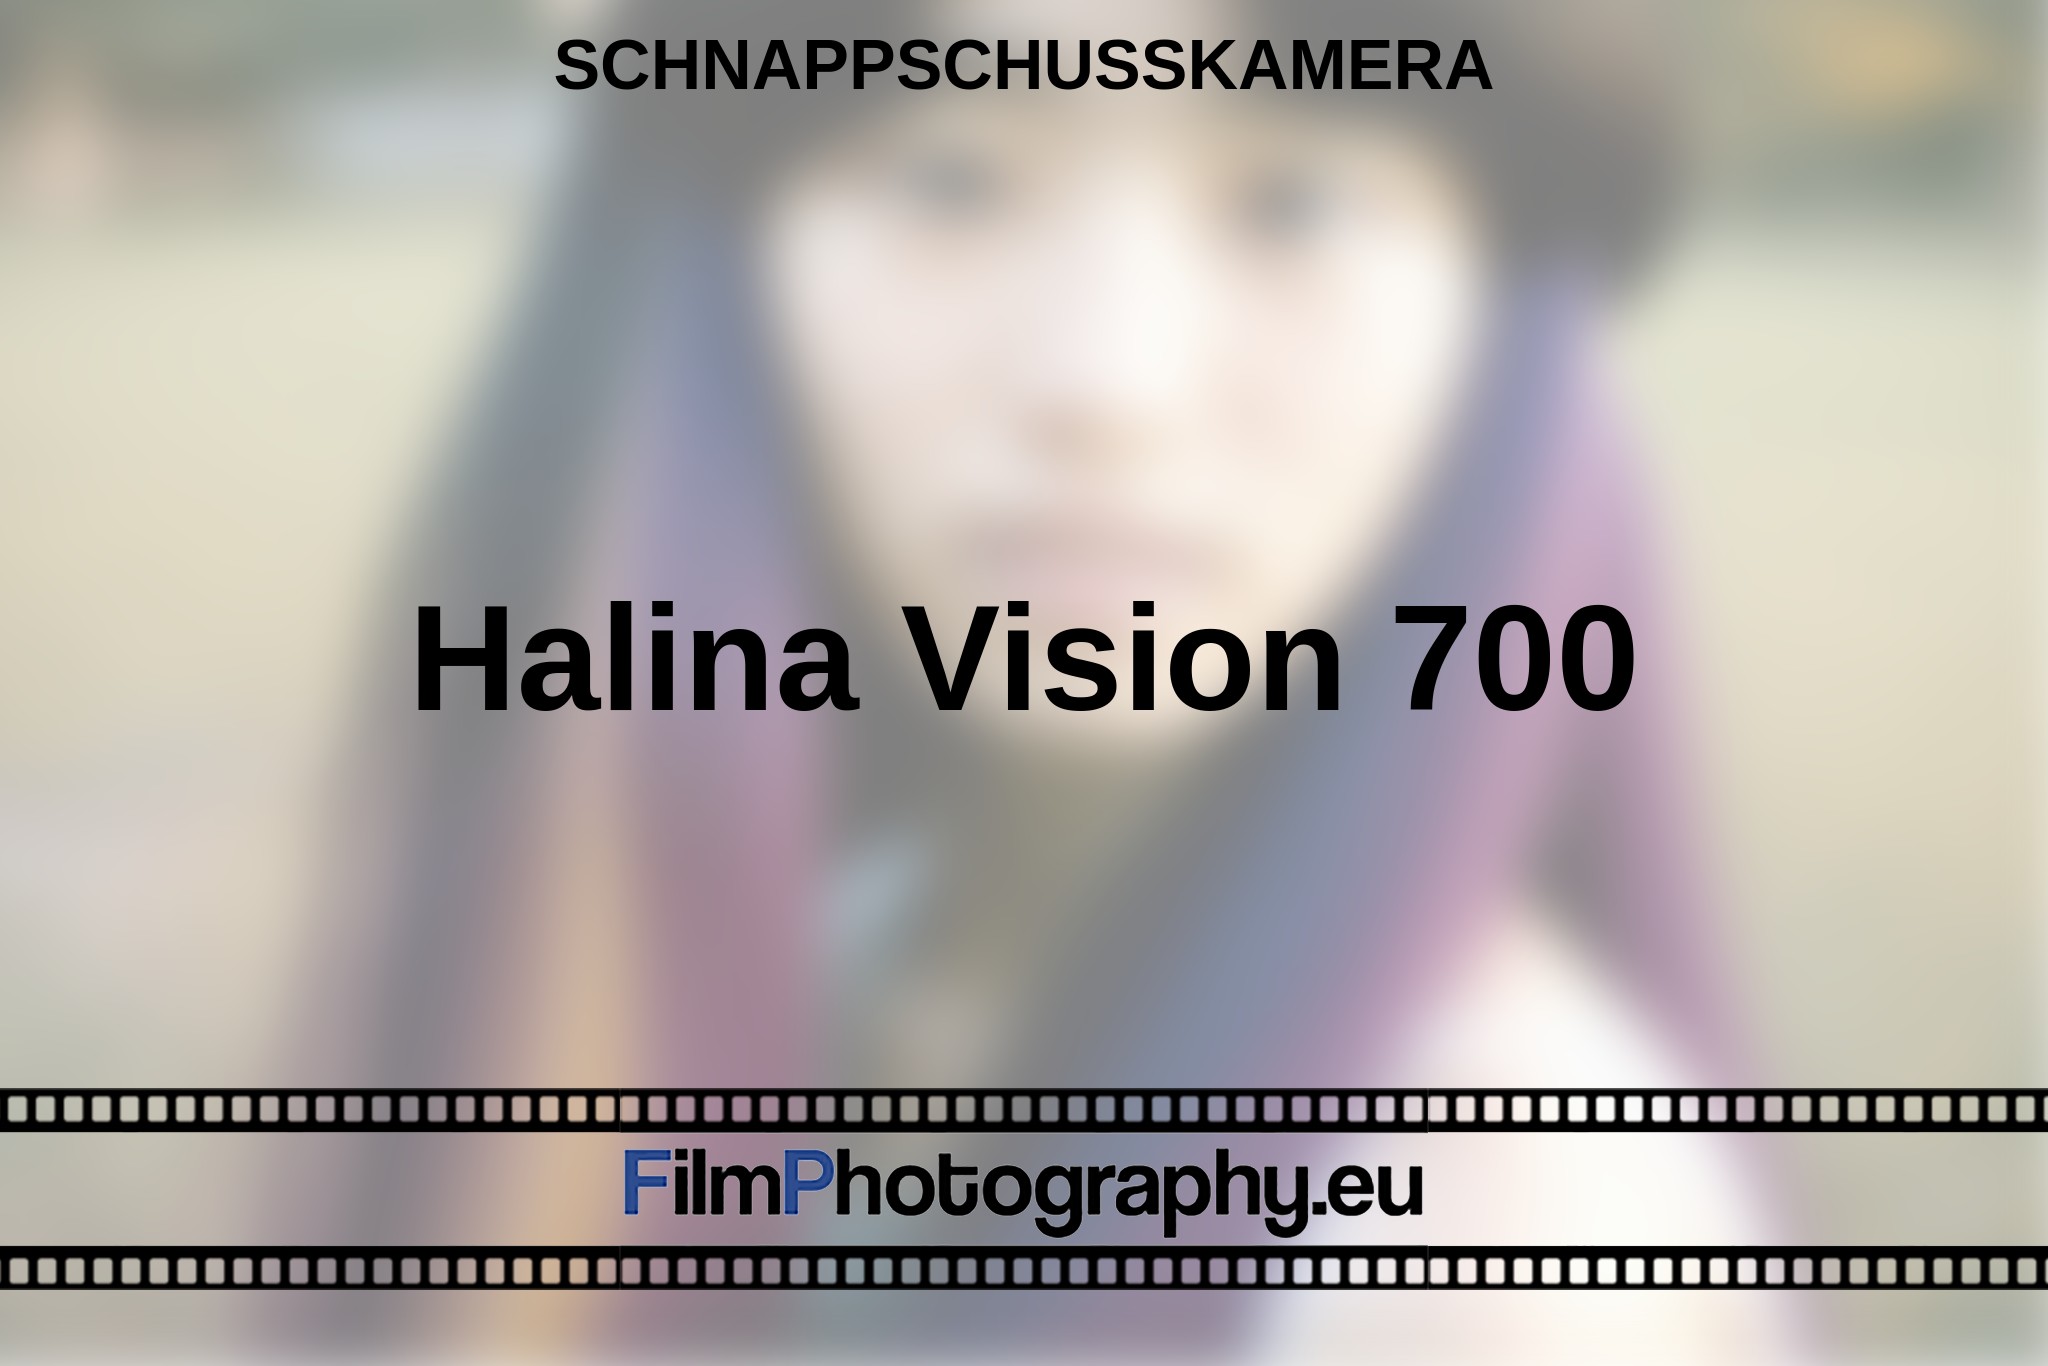 halina-vision-700-schnappschusskamera-bnv.jpg